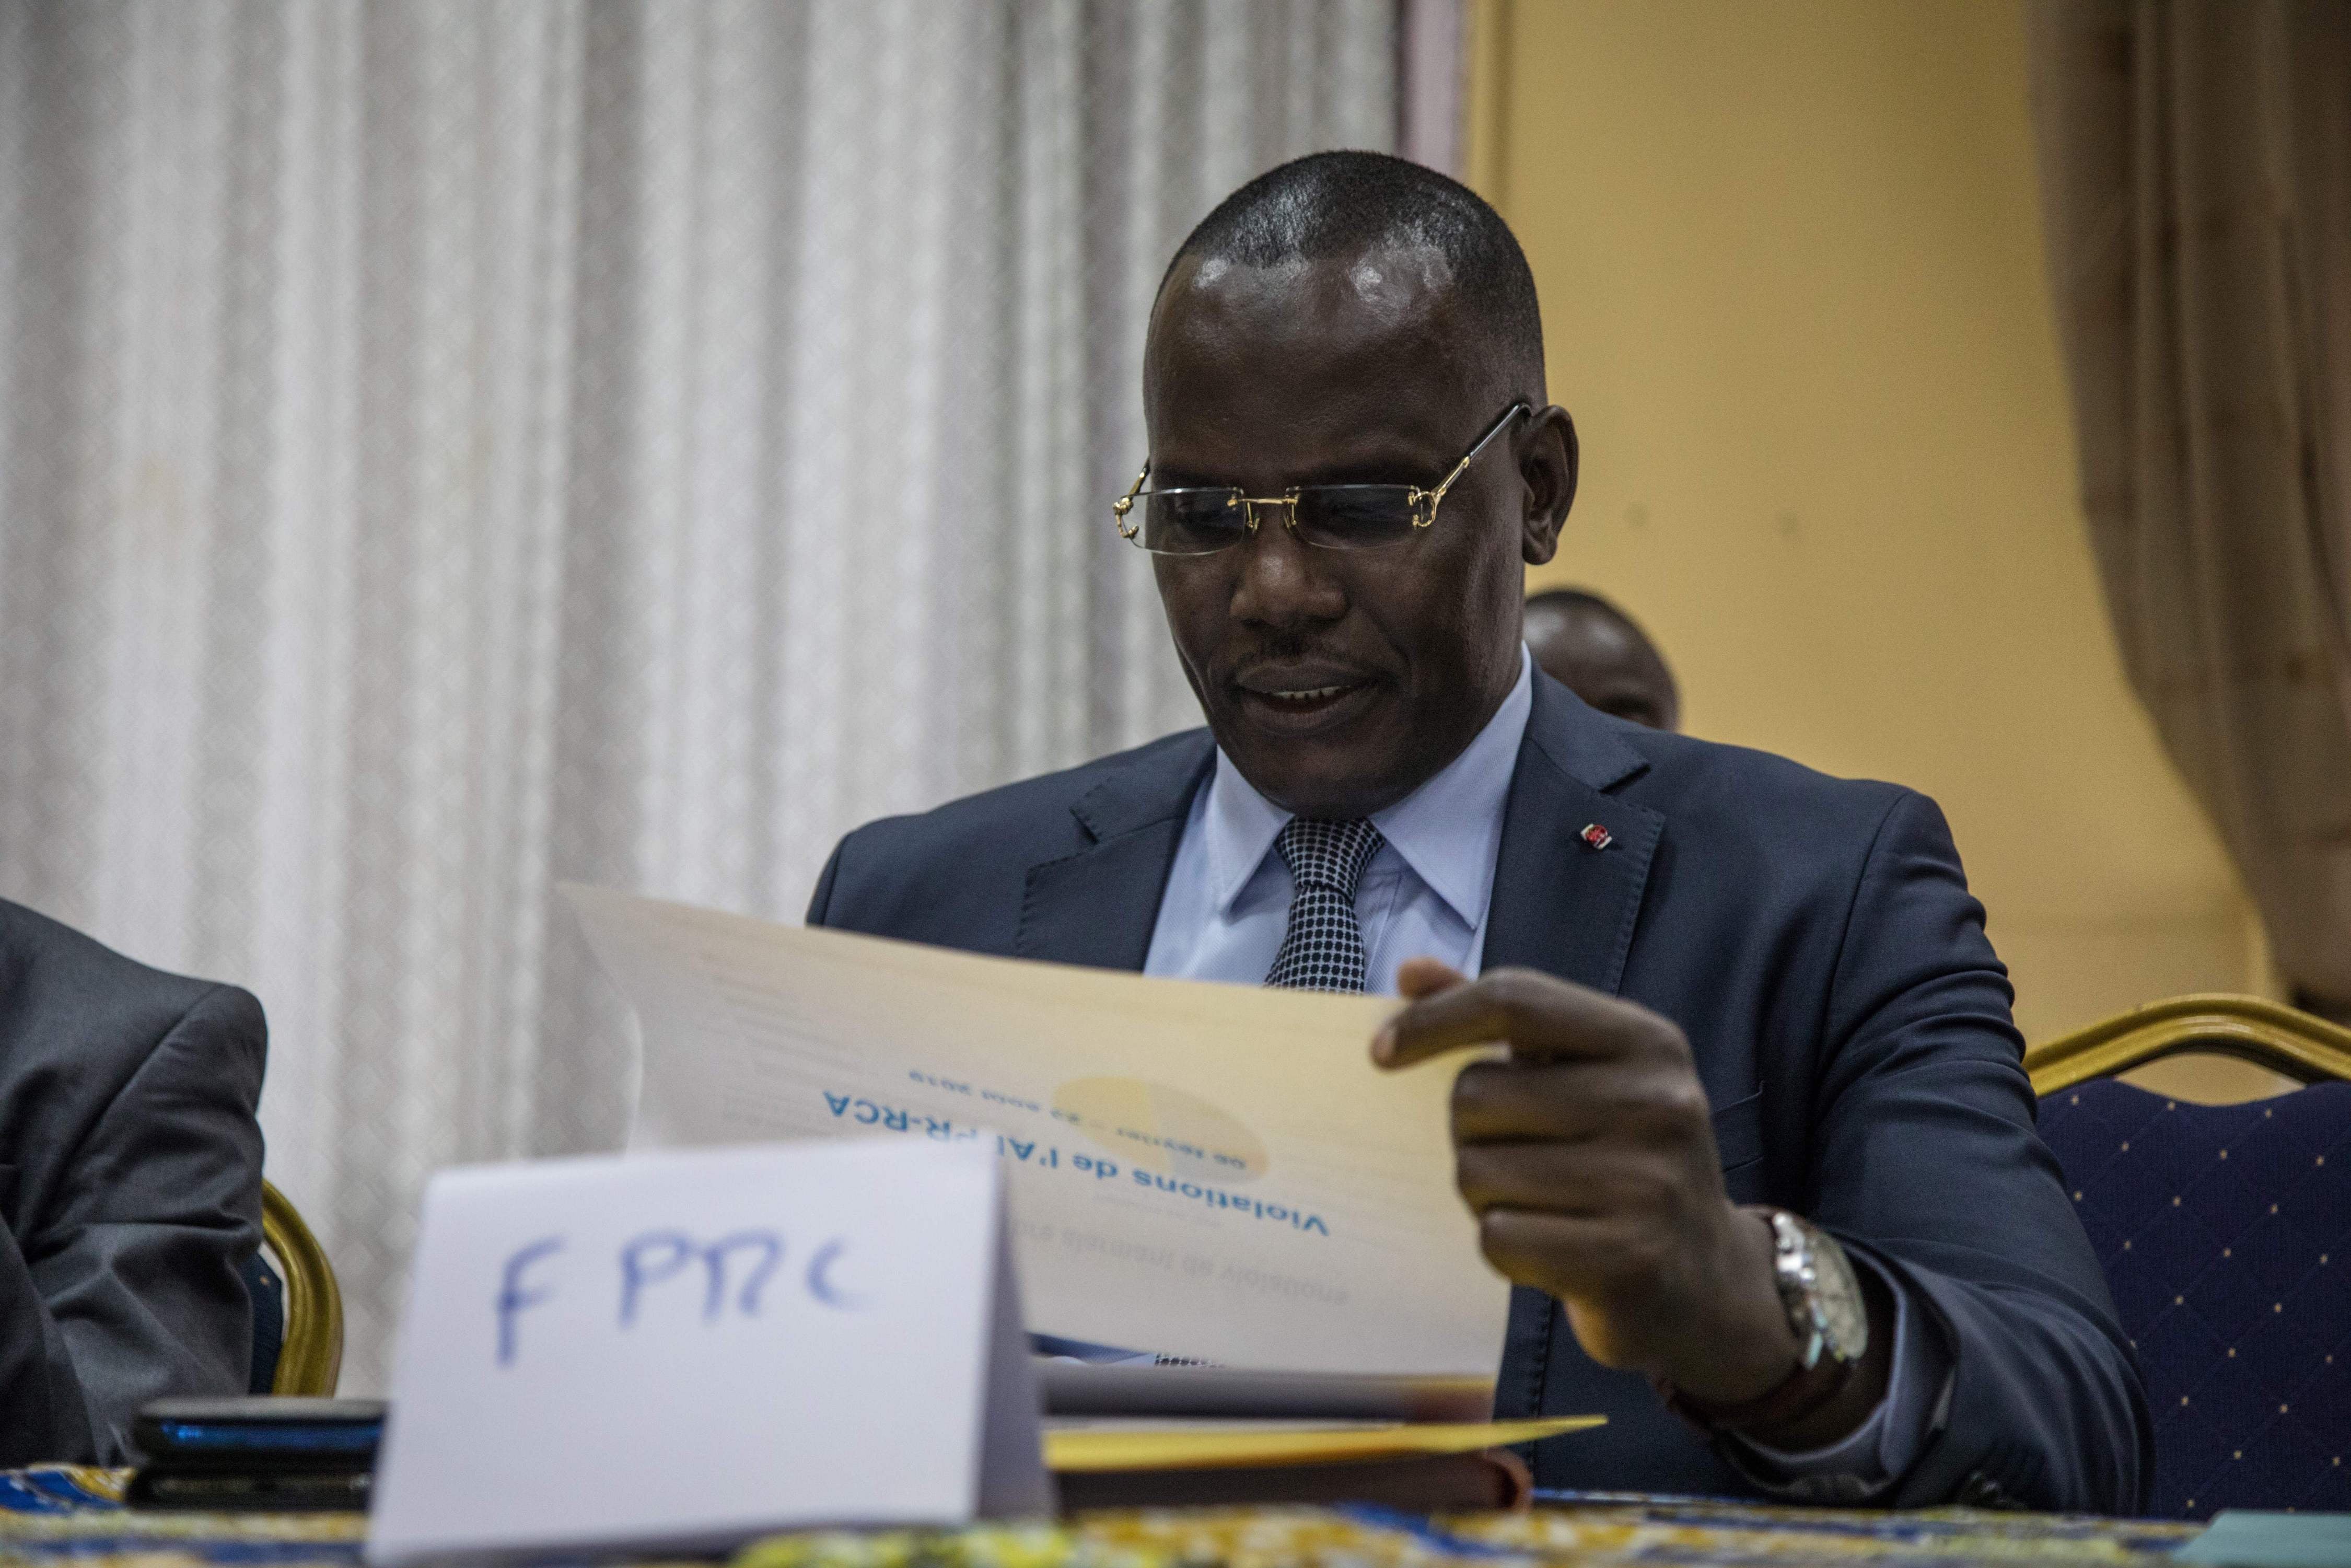 Abdoulaye Hissene, l'un des chefs du groupe armé FPRC (Front populaire pour la renaissance de la République centrafricaine), lit un rapport sur les violations des accords de Khartoum par les groupes armés, à Bangui, le 23 août 2019.  Ⓒ 2019 Florent Vergnes / AFP via Getty Images